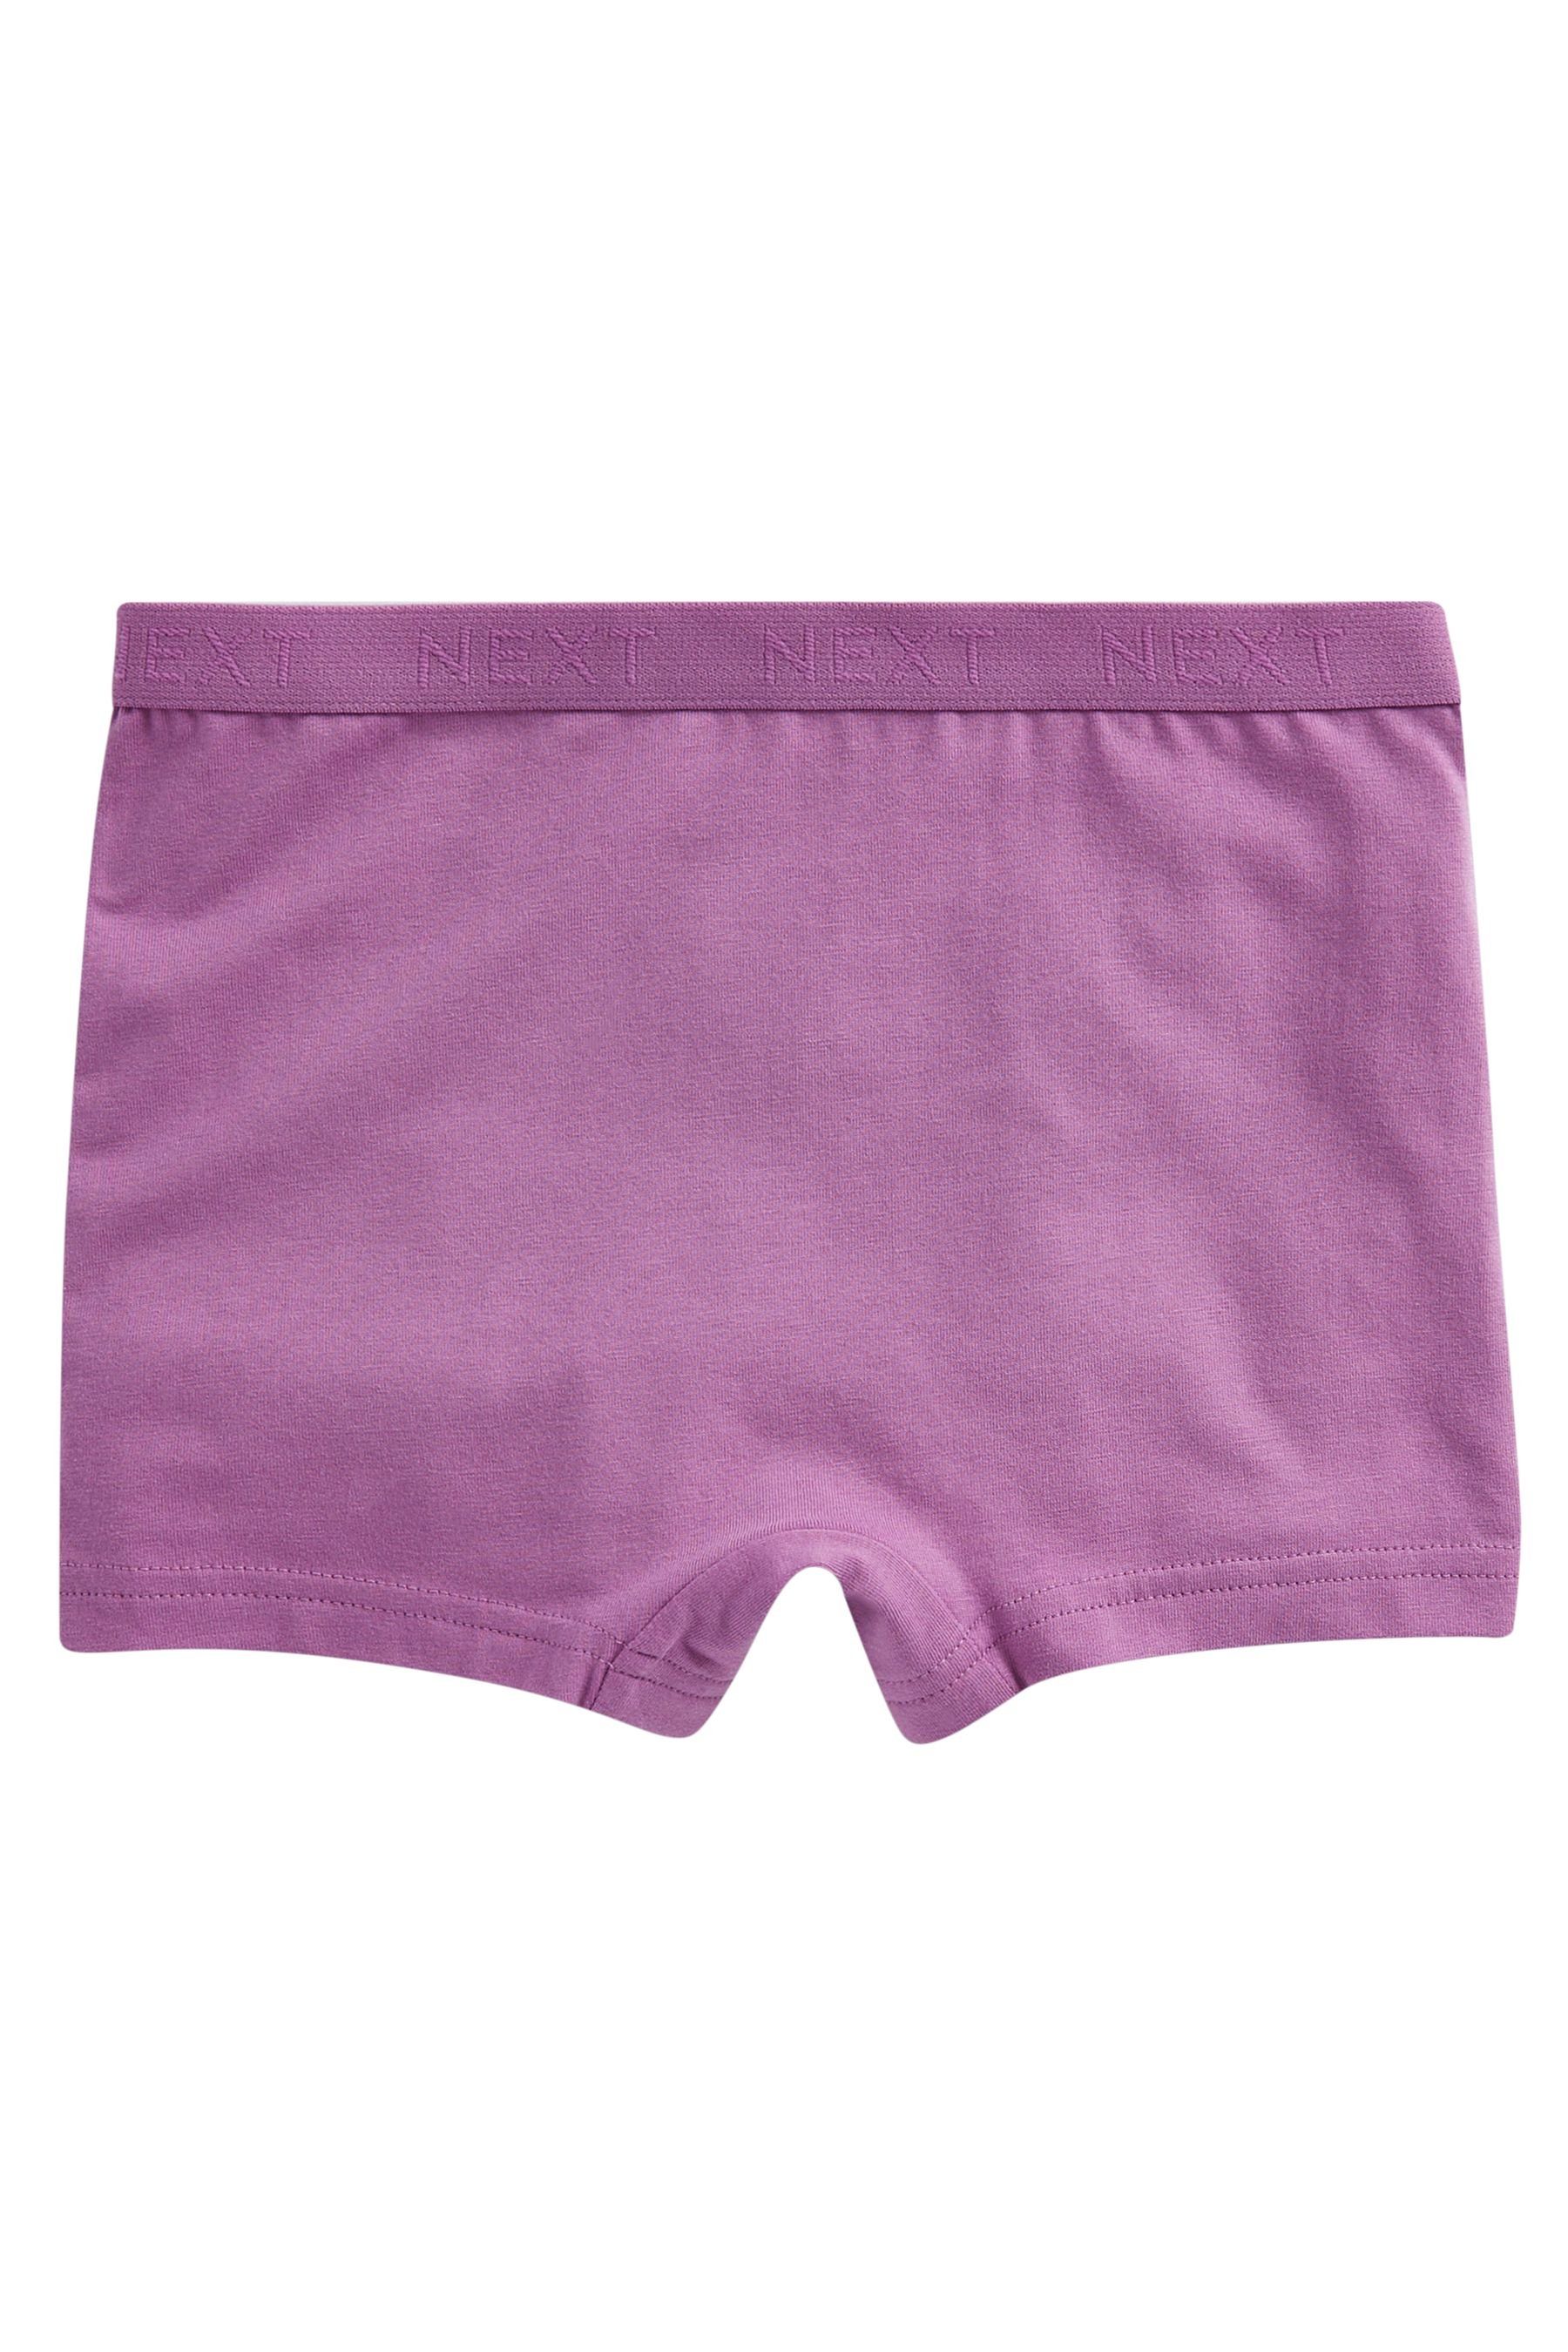 Next Schlüpfer Shorts mit Blümchenmuster, 5er-Pack (5-St) Pink/Purple